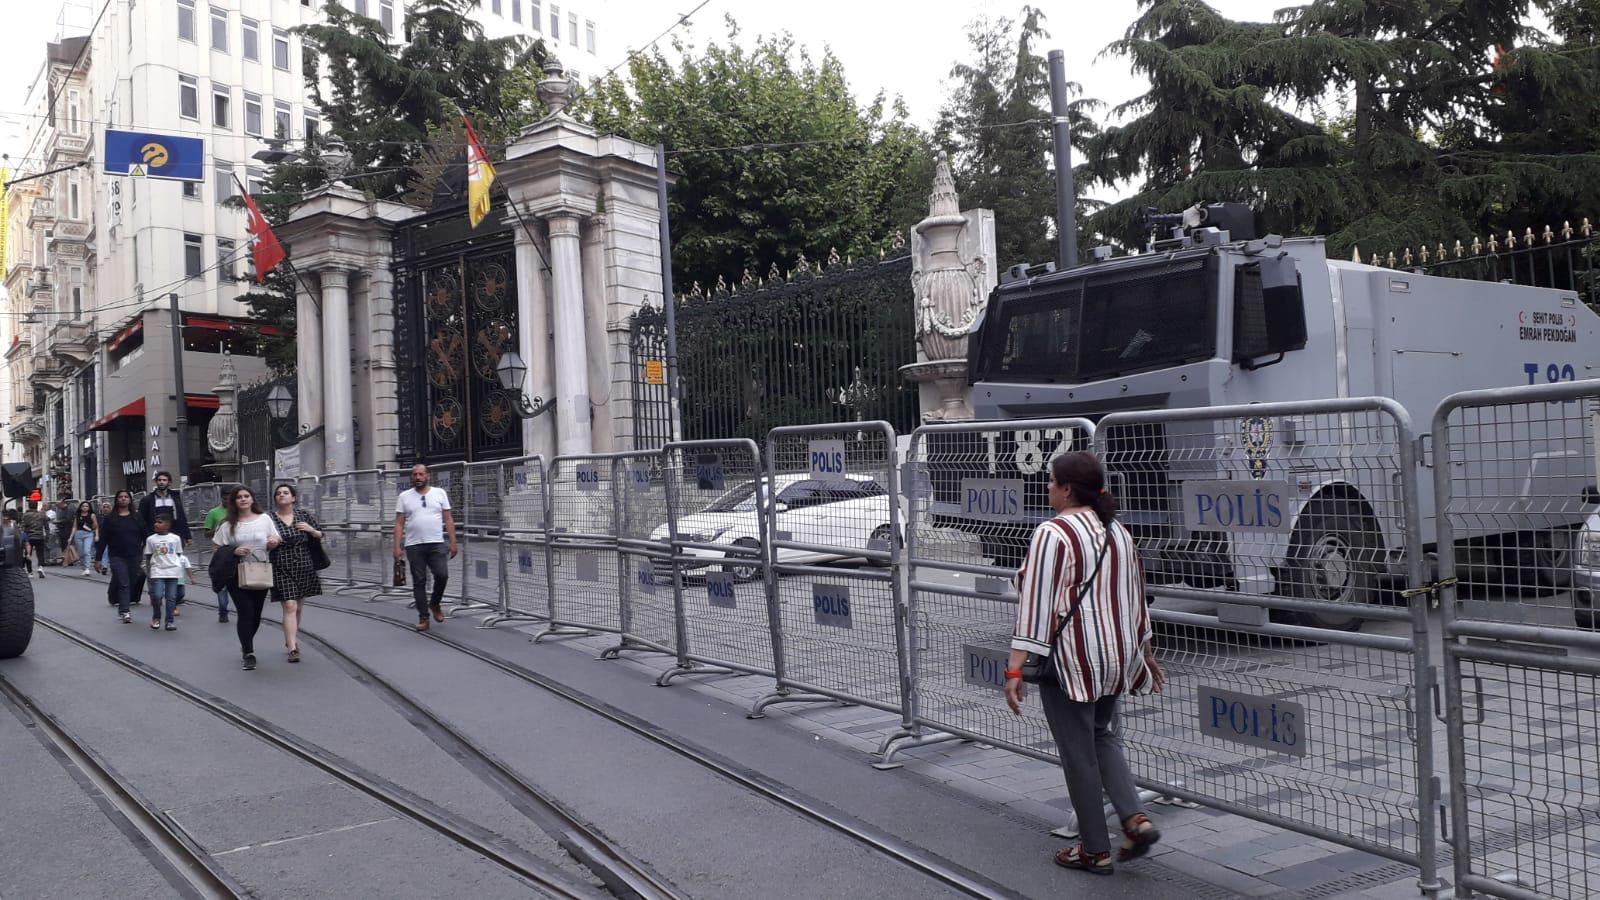 Площадь у Галатасарайского лицея в Стамбуле, оцепленная полицейскими. 21 мая 2019 года. Фото Анжелики Тохтамышевой для "Кавказского узла"